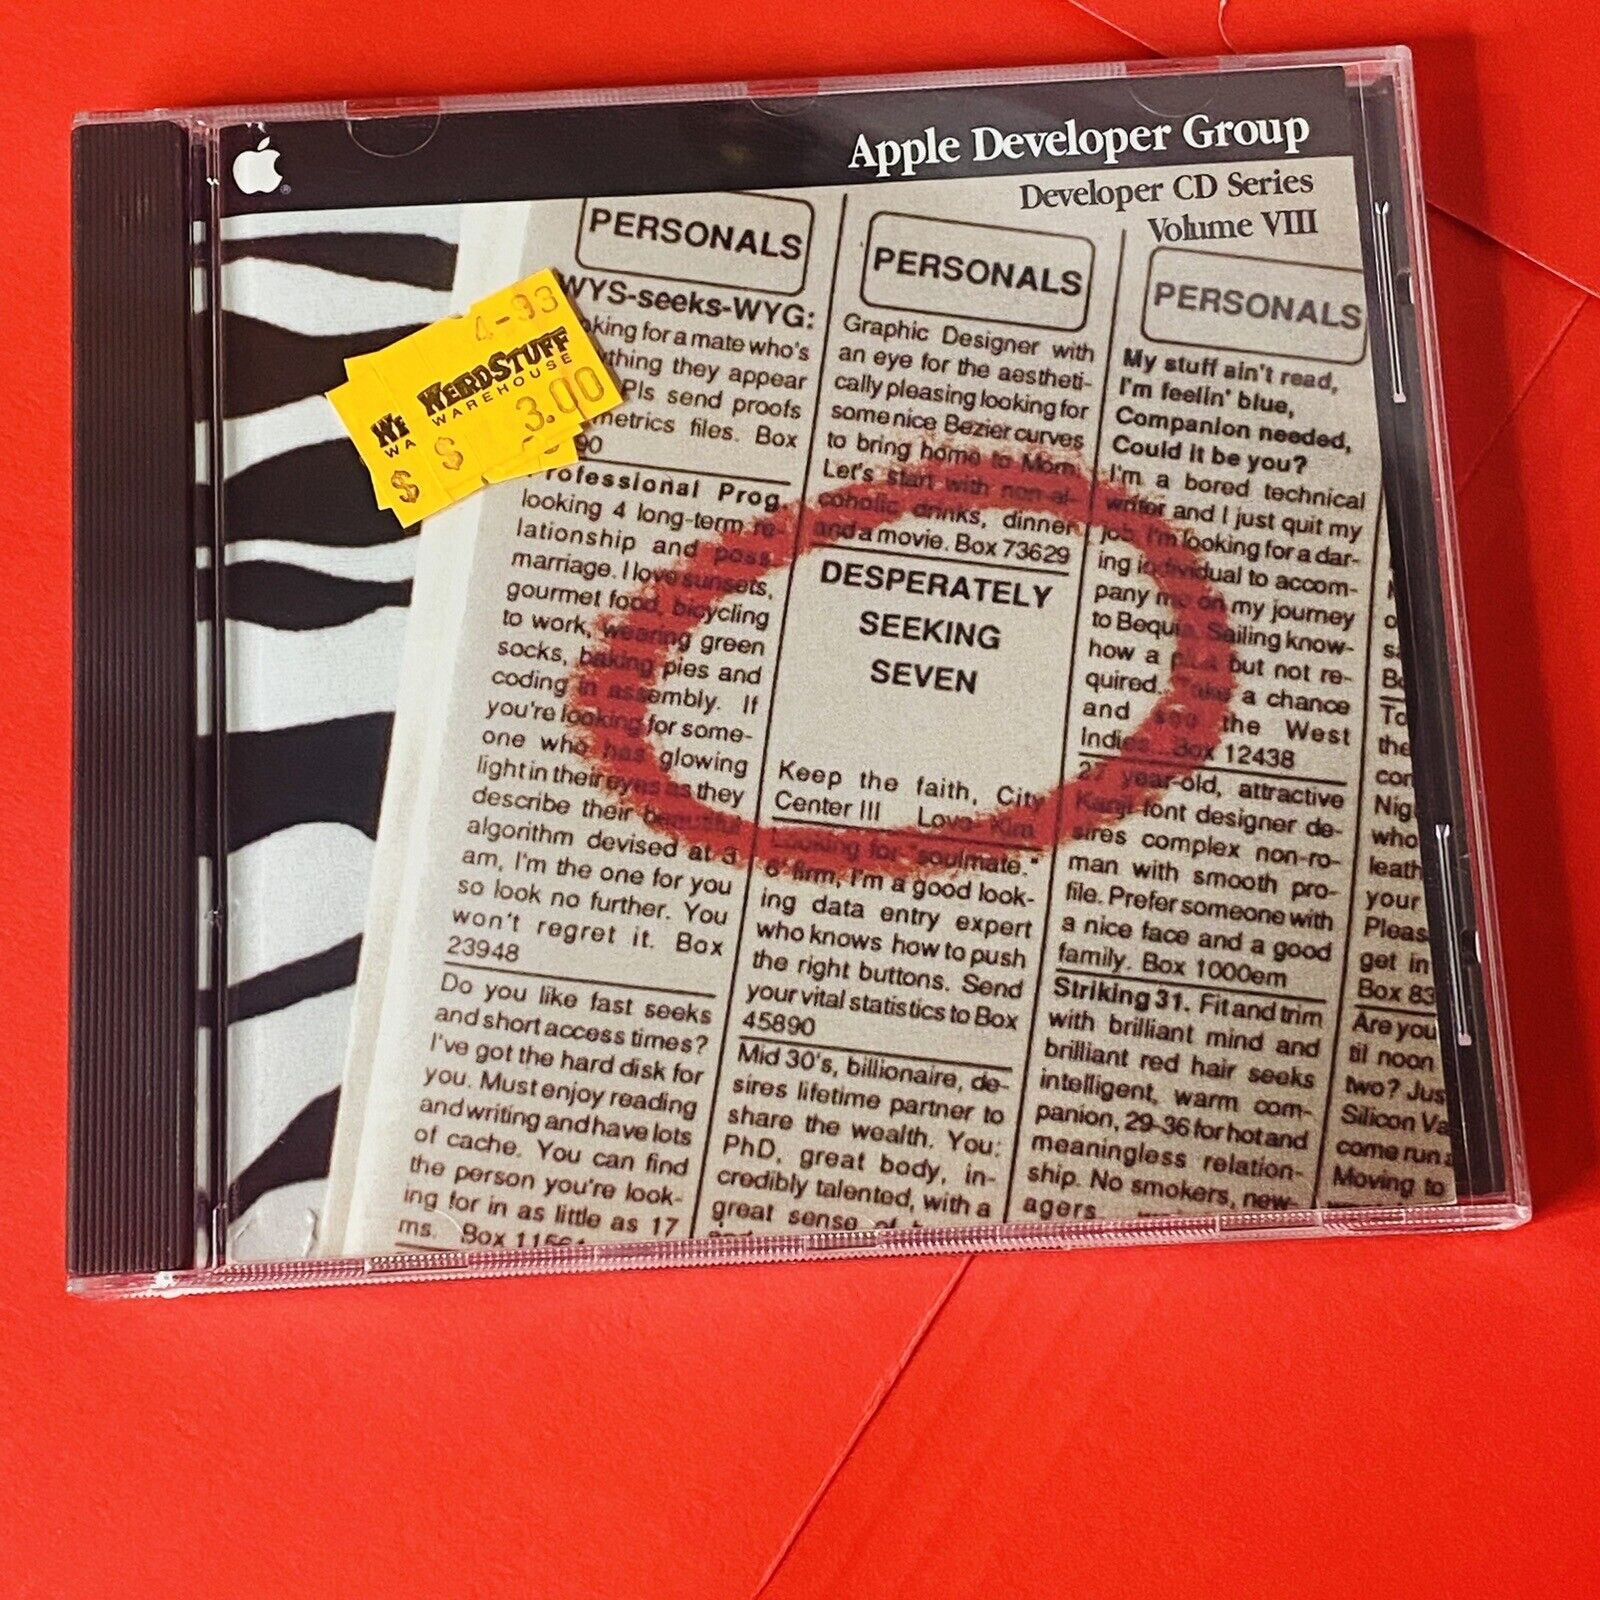 Apple Developer Group CD Series Volume VIII Desperately Seeking Seven 1991 Vtg